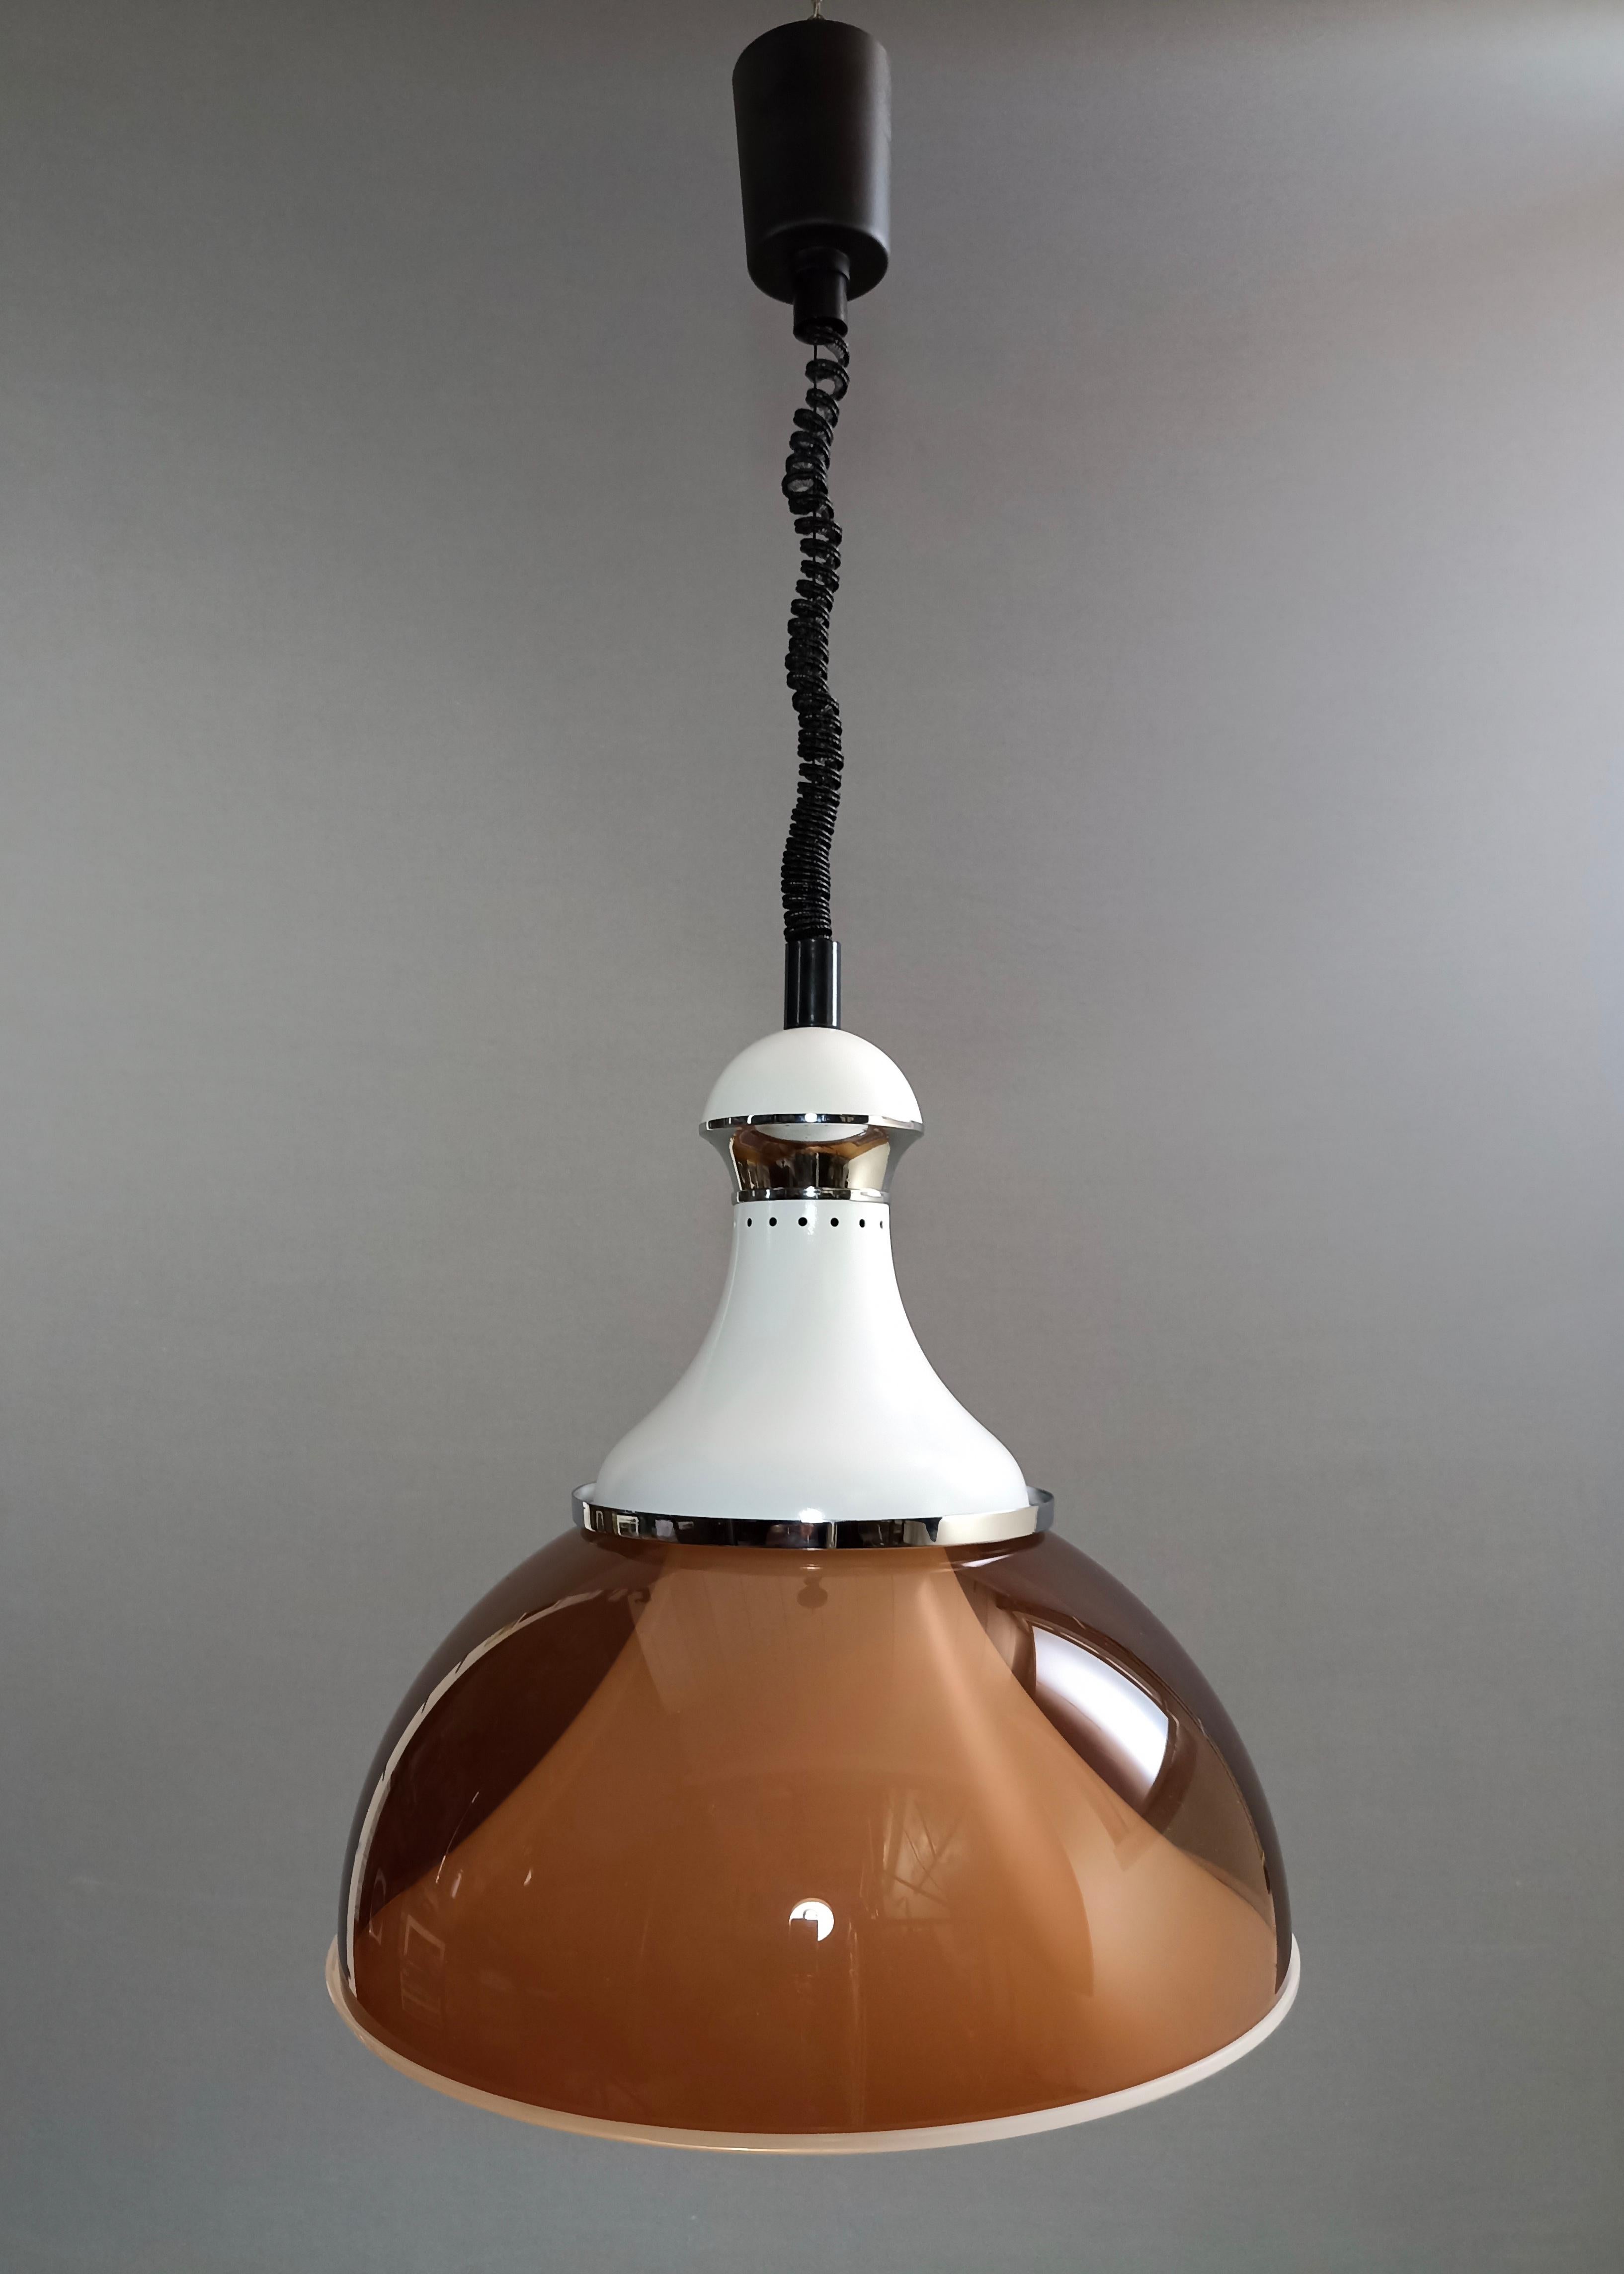 Belle et rare grande lampe suspendue Space AGE réglable en hauteur, en Perspex, aluminium laqué blanc et accents chromés. Italie, années 1960-1970. 
Il s'agit d'un modèle au design bien connu et, bien que dépourvu de marque, il est rattaché à la